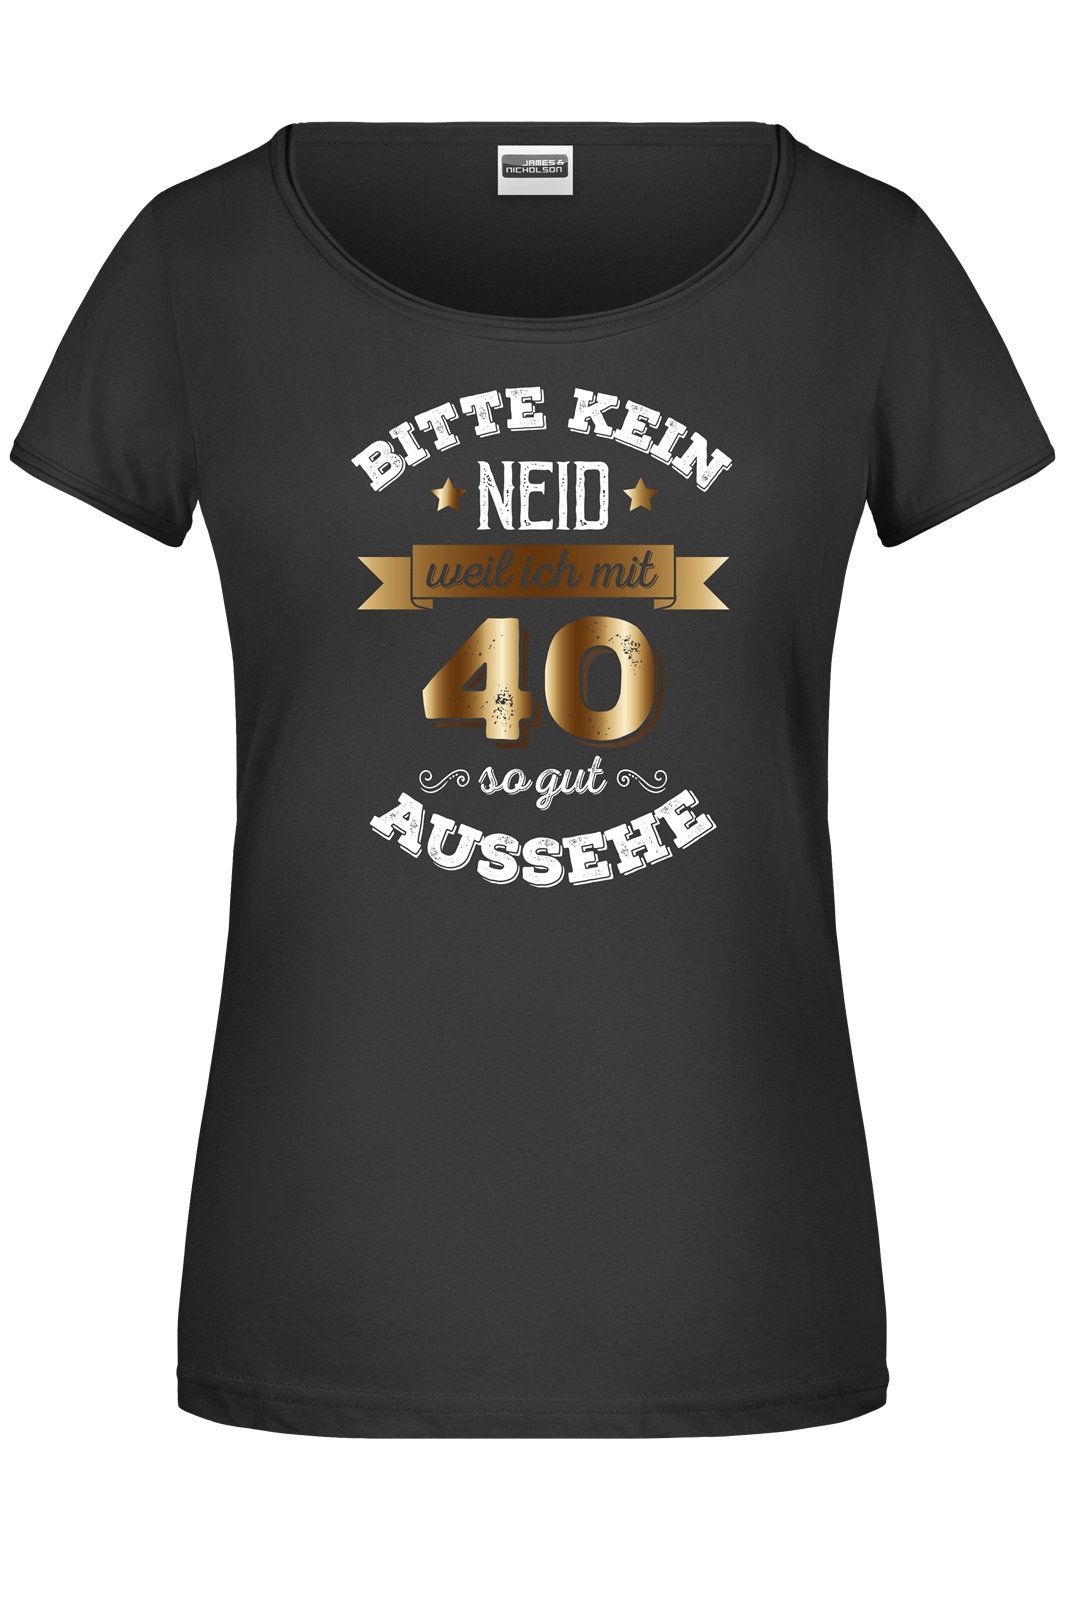 Bild: T-Shirt - Bitte kein Neid, weil ich mit 40 so gut aussehe. Geschenkidee